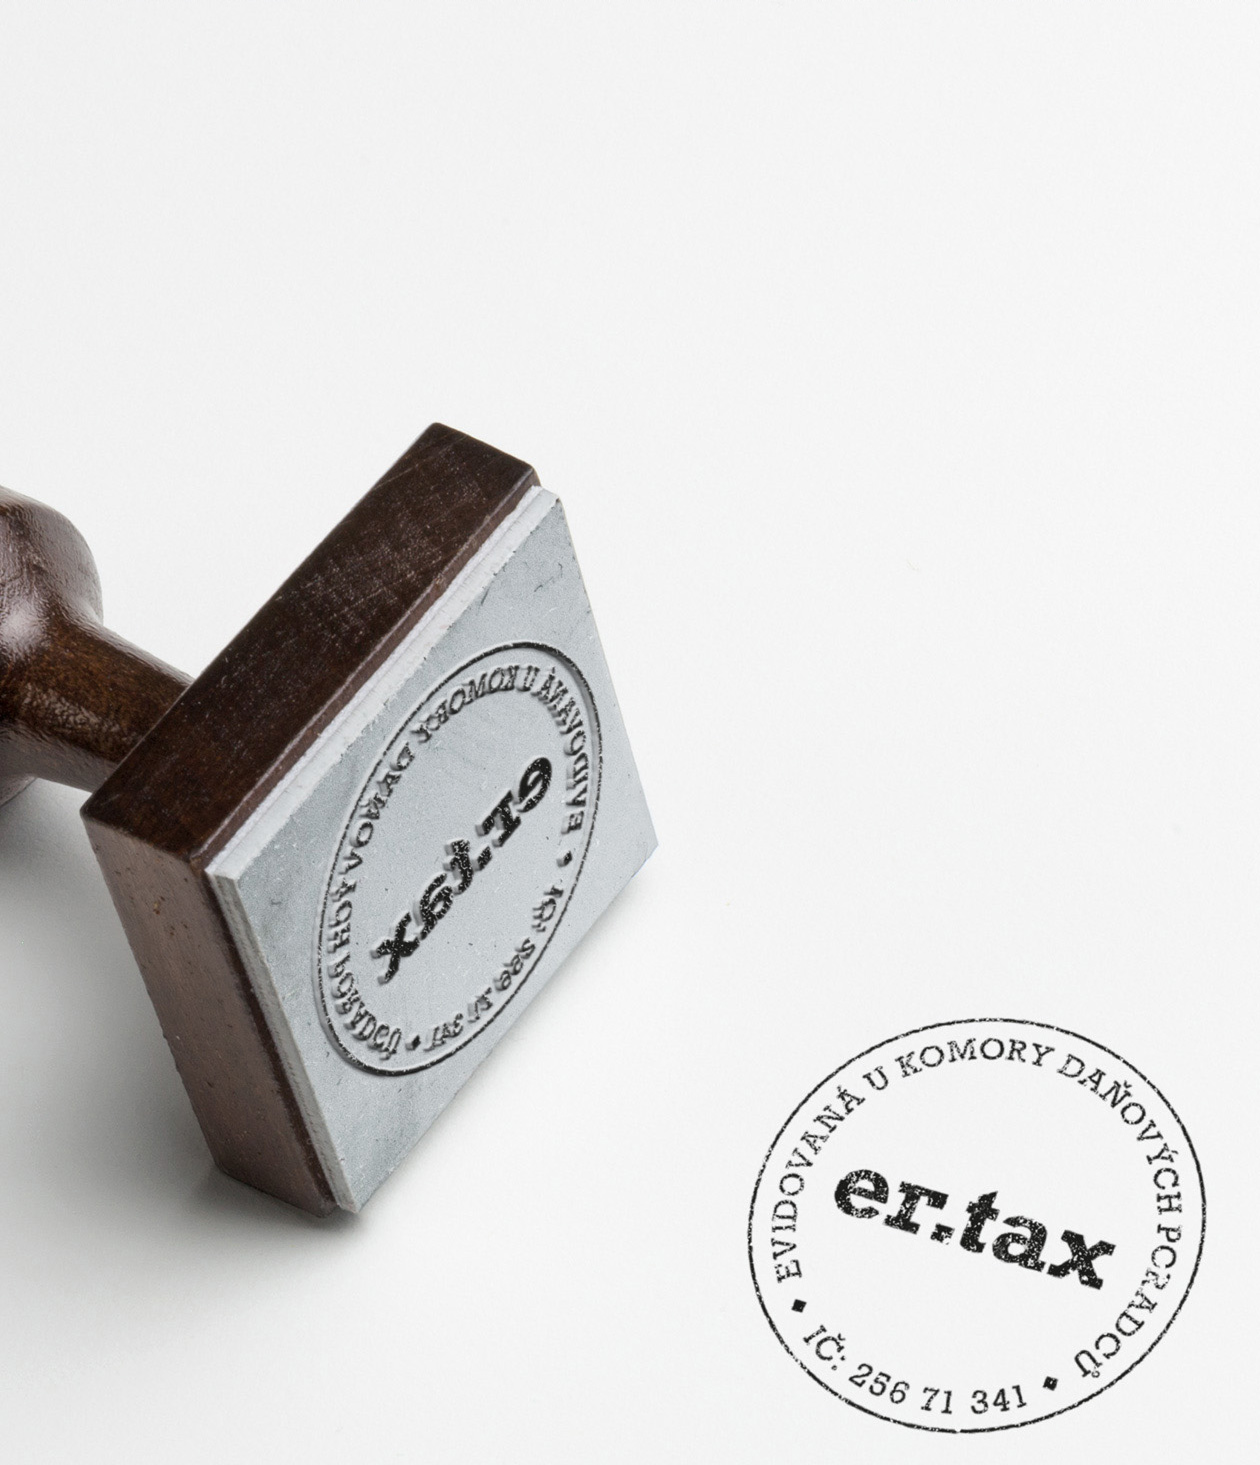 er-tax logo branding